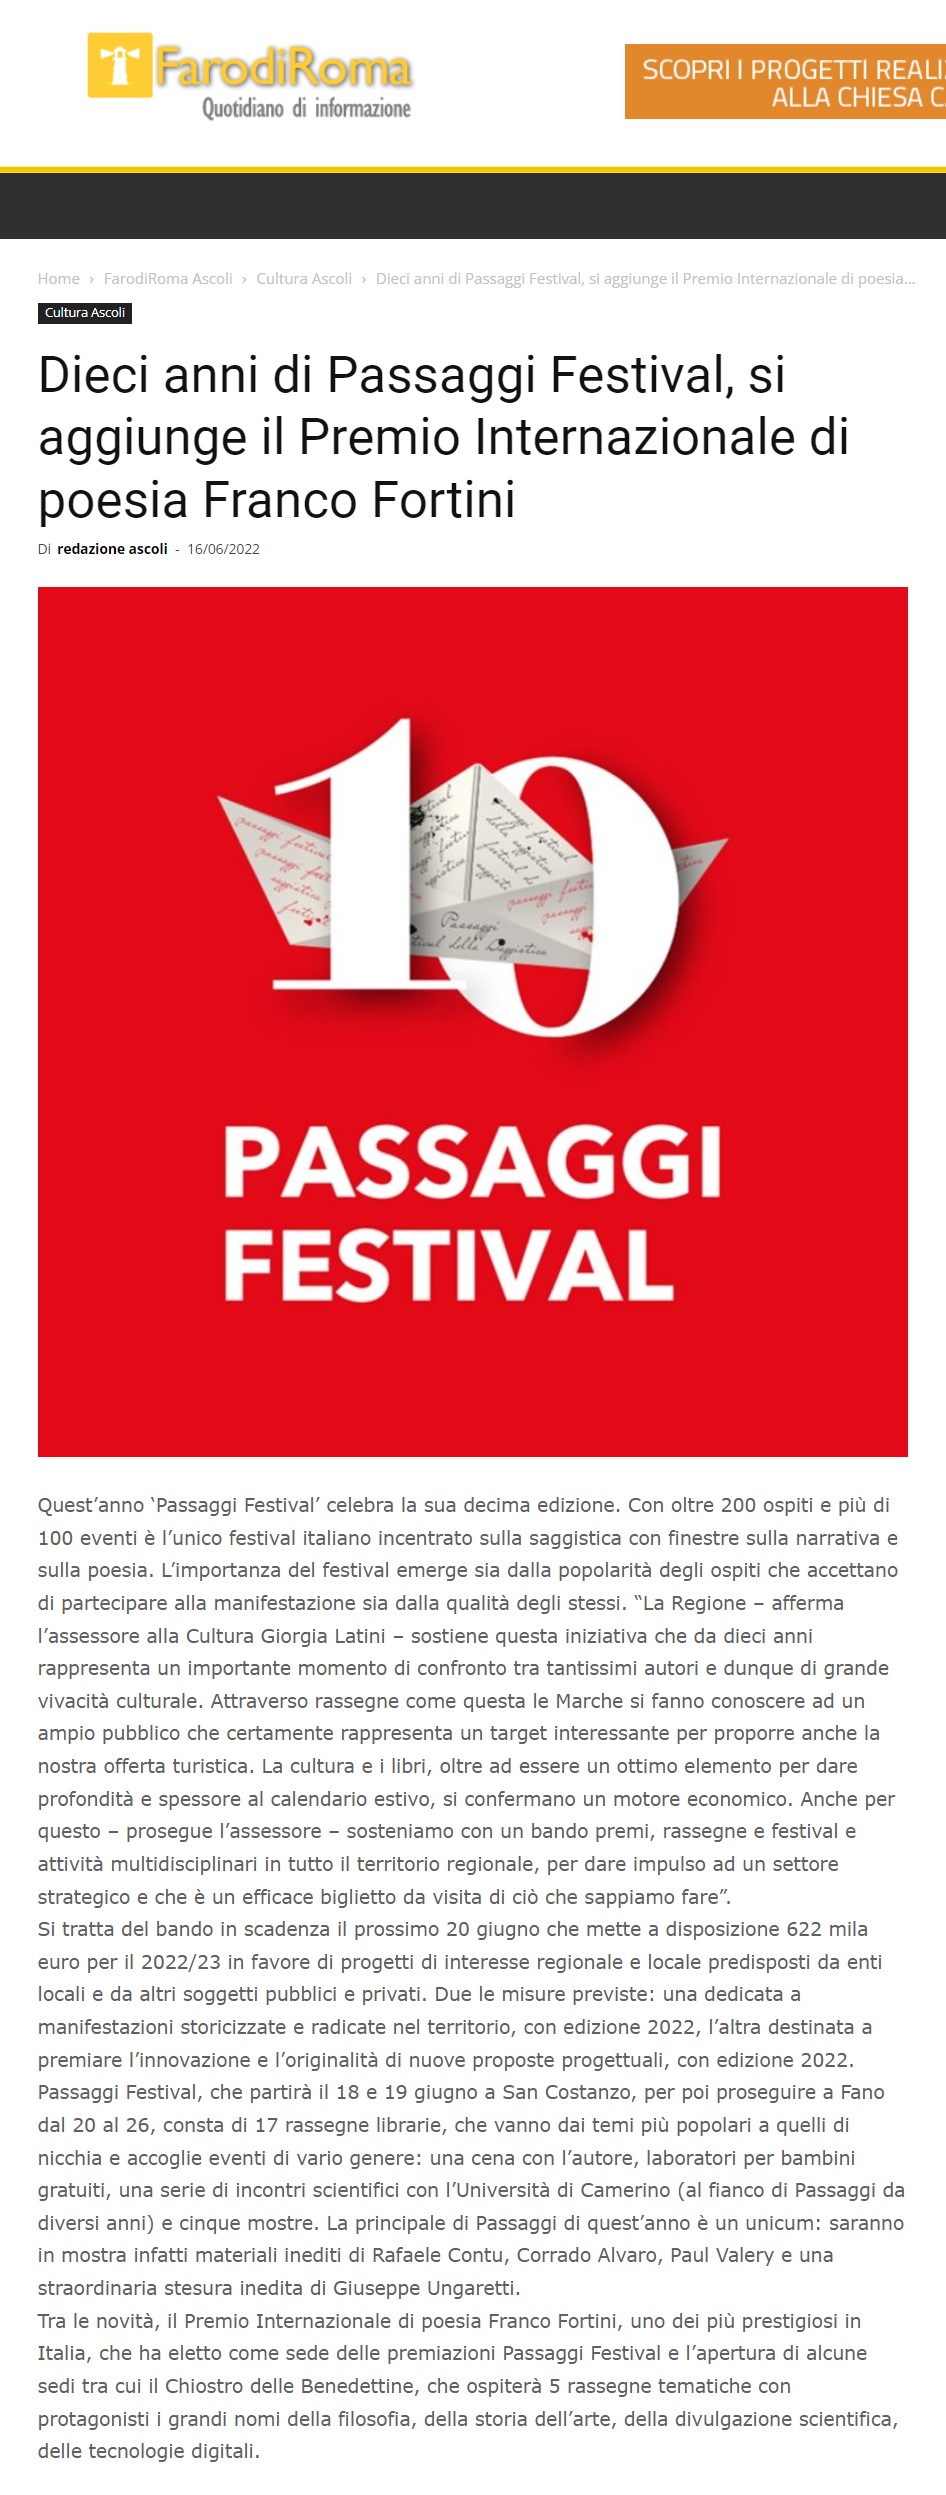 farodiroma-dieci-anni-di-passaggi-festival-si-aggiunge-il-premio-internazionale-di-poesia-franco-fortini